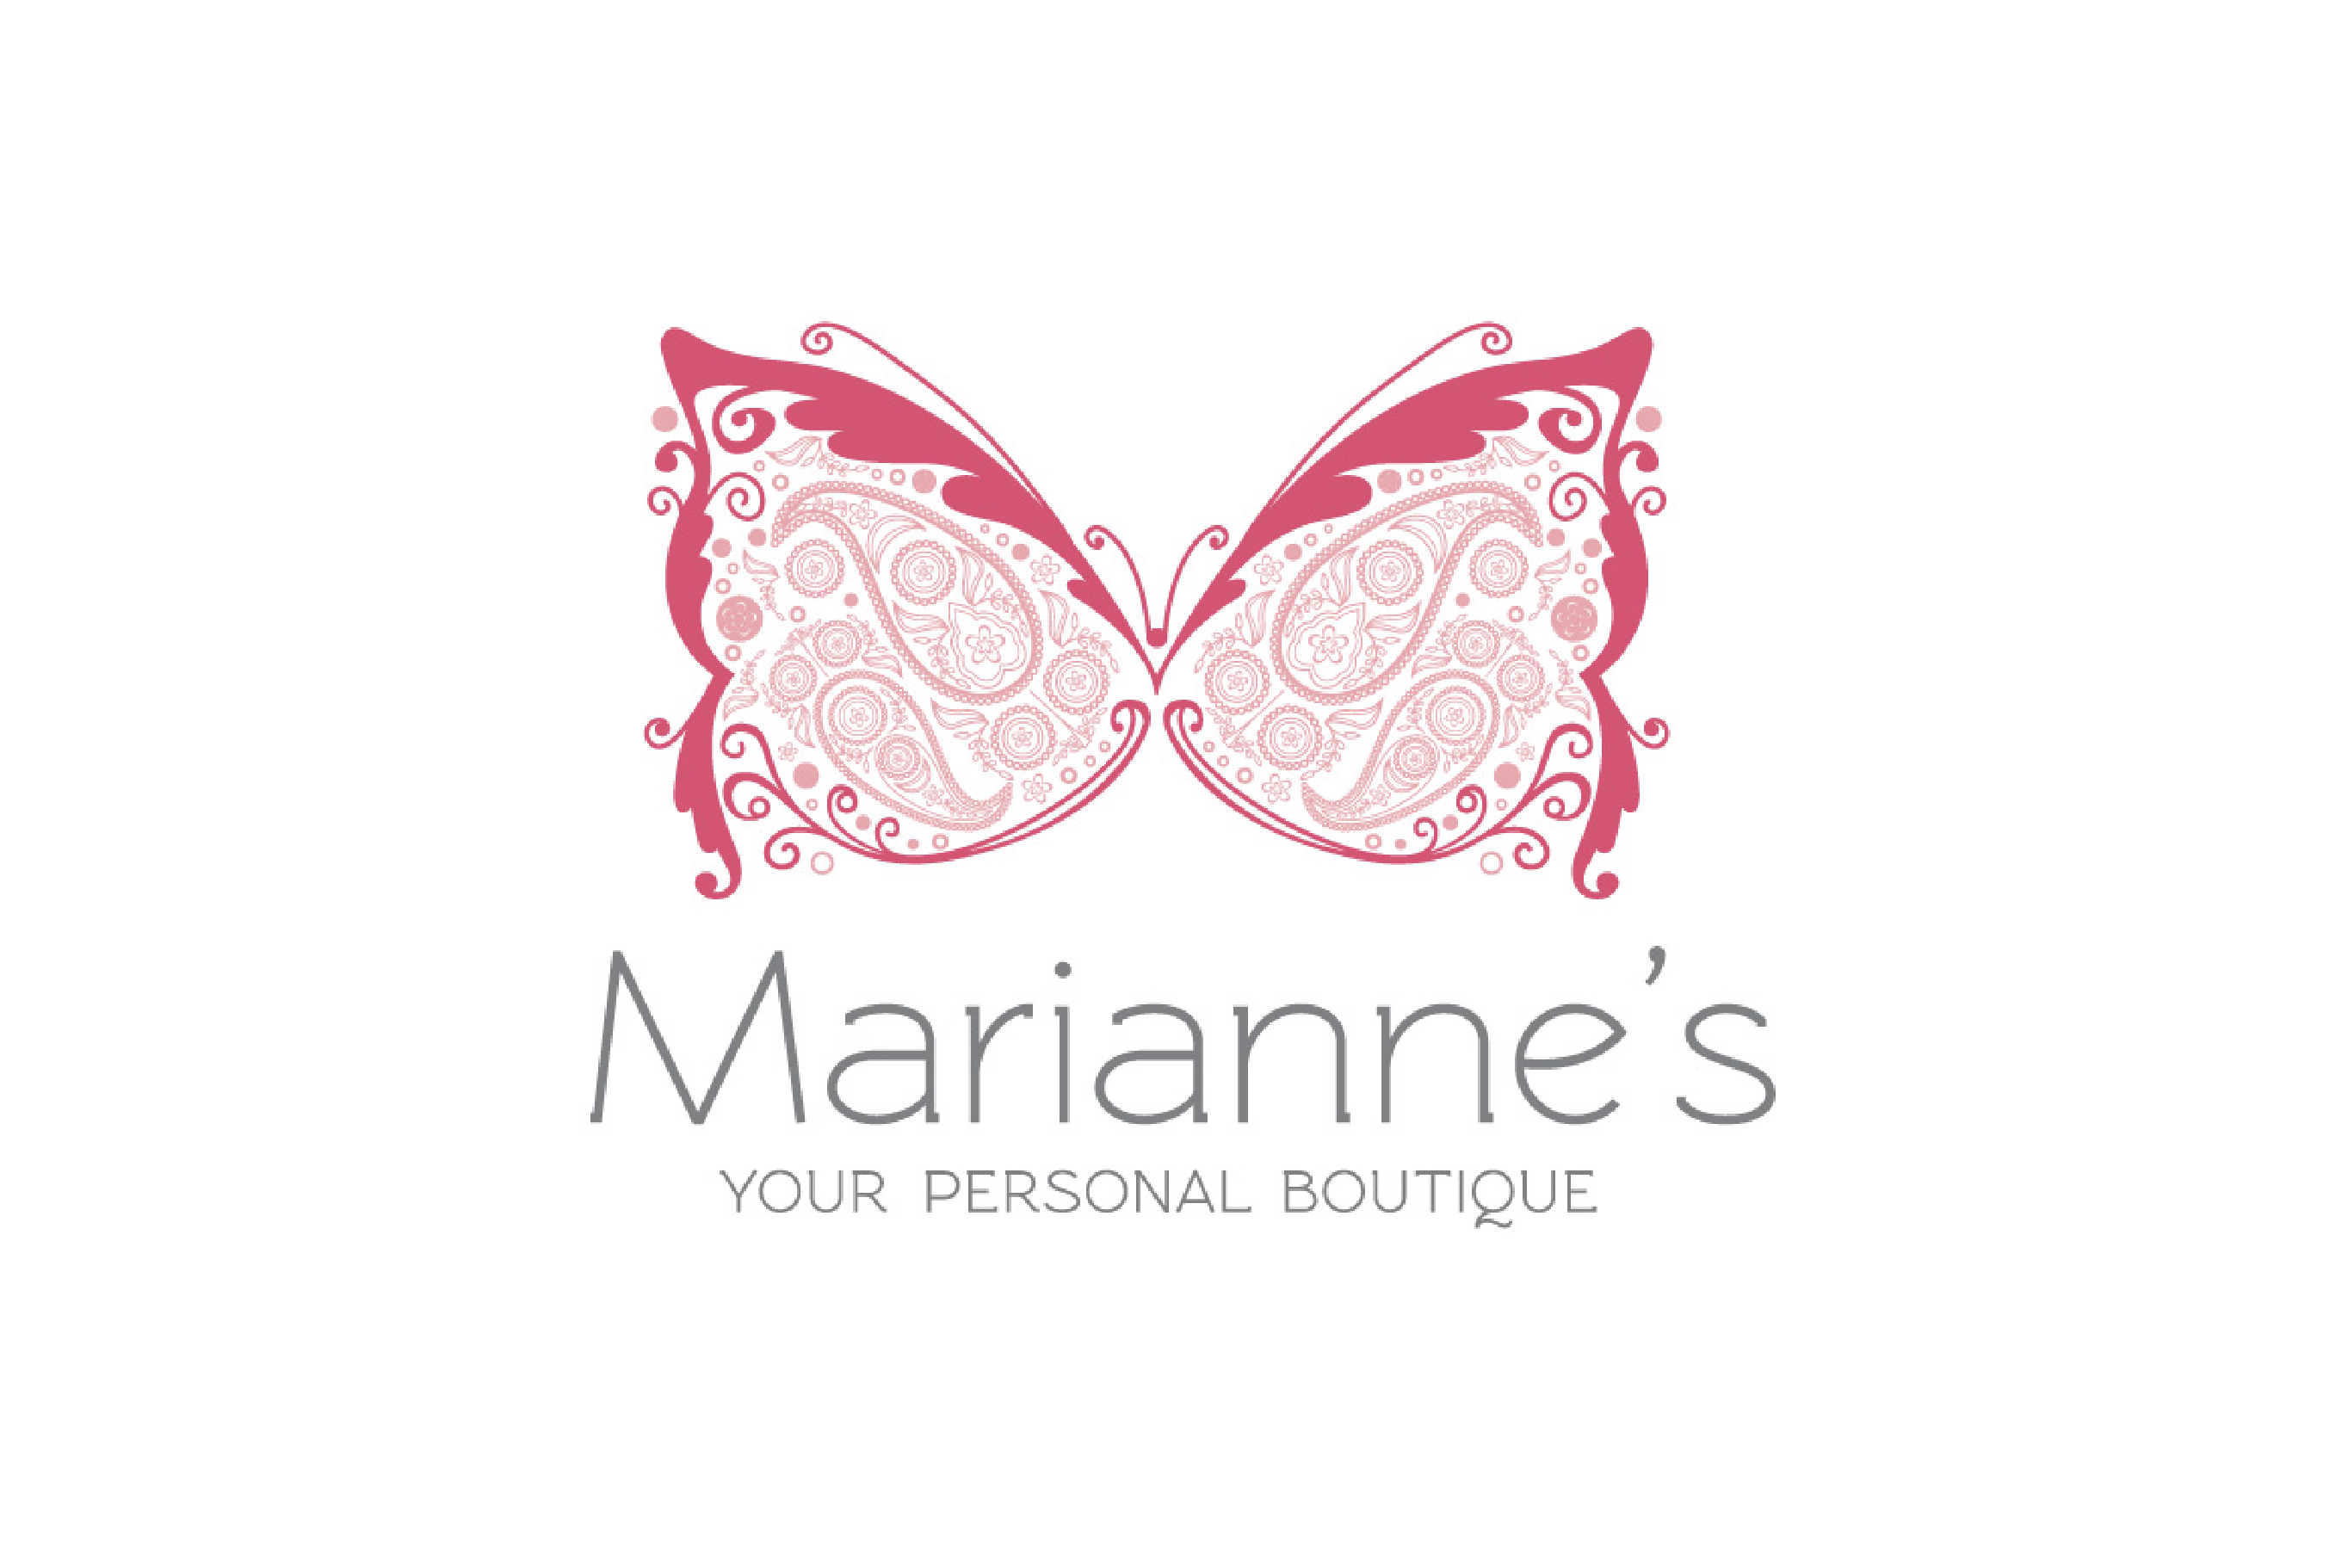 Marianne's Boutique Logo | Brand Design